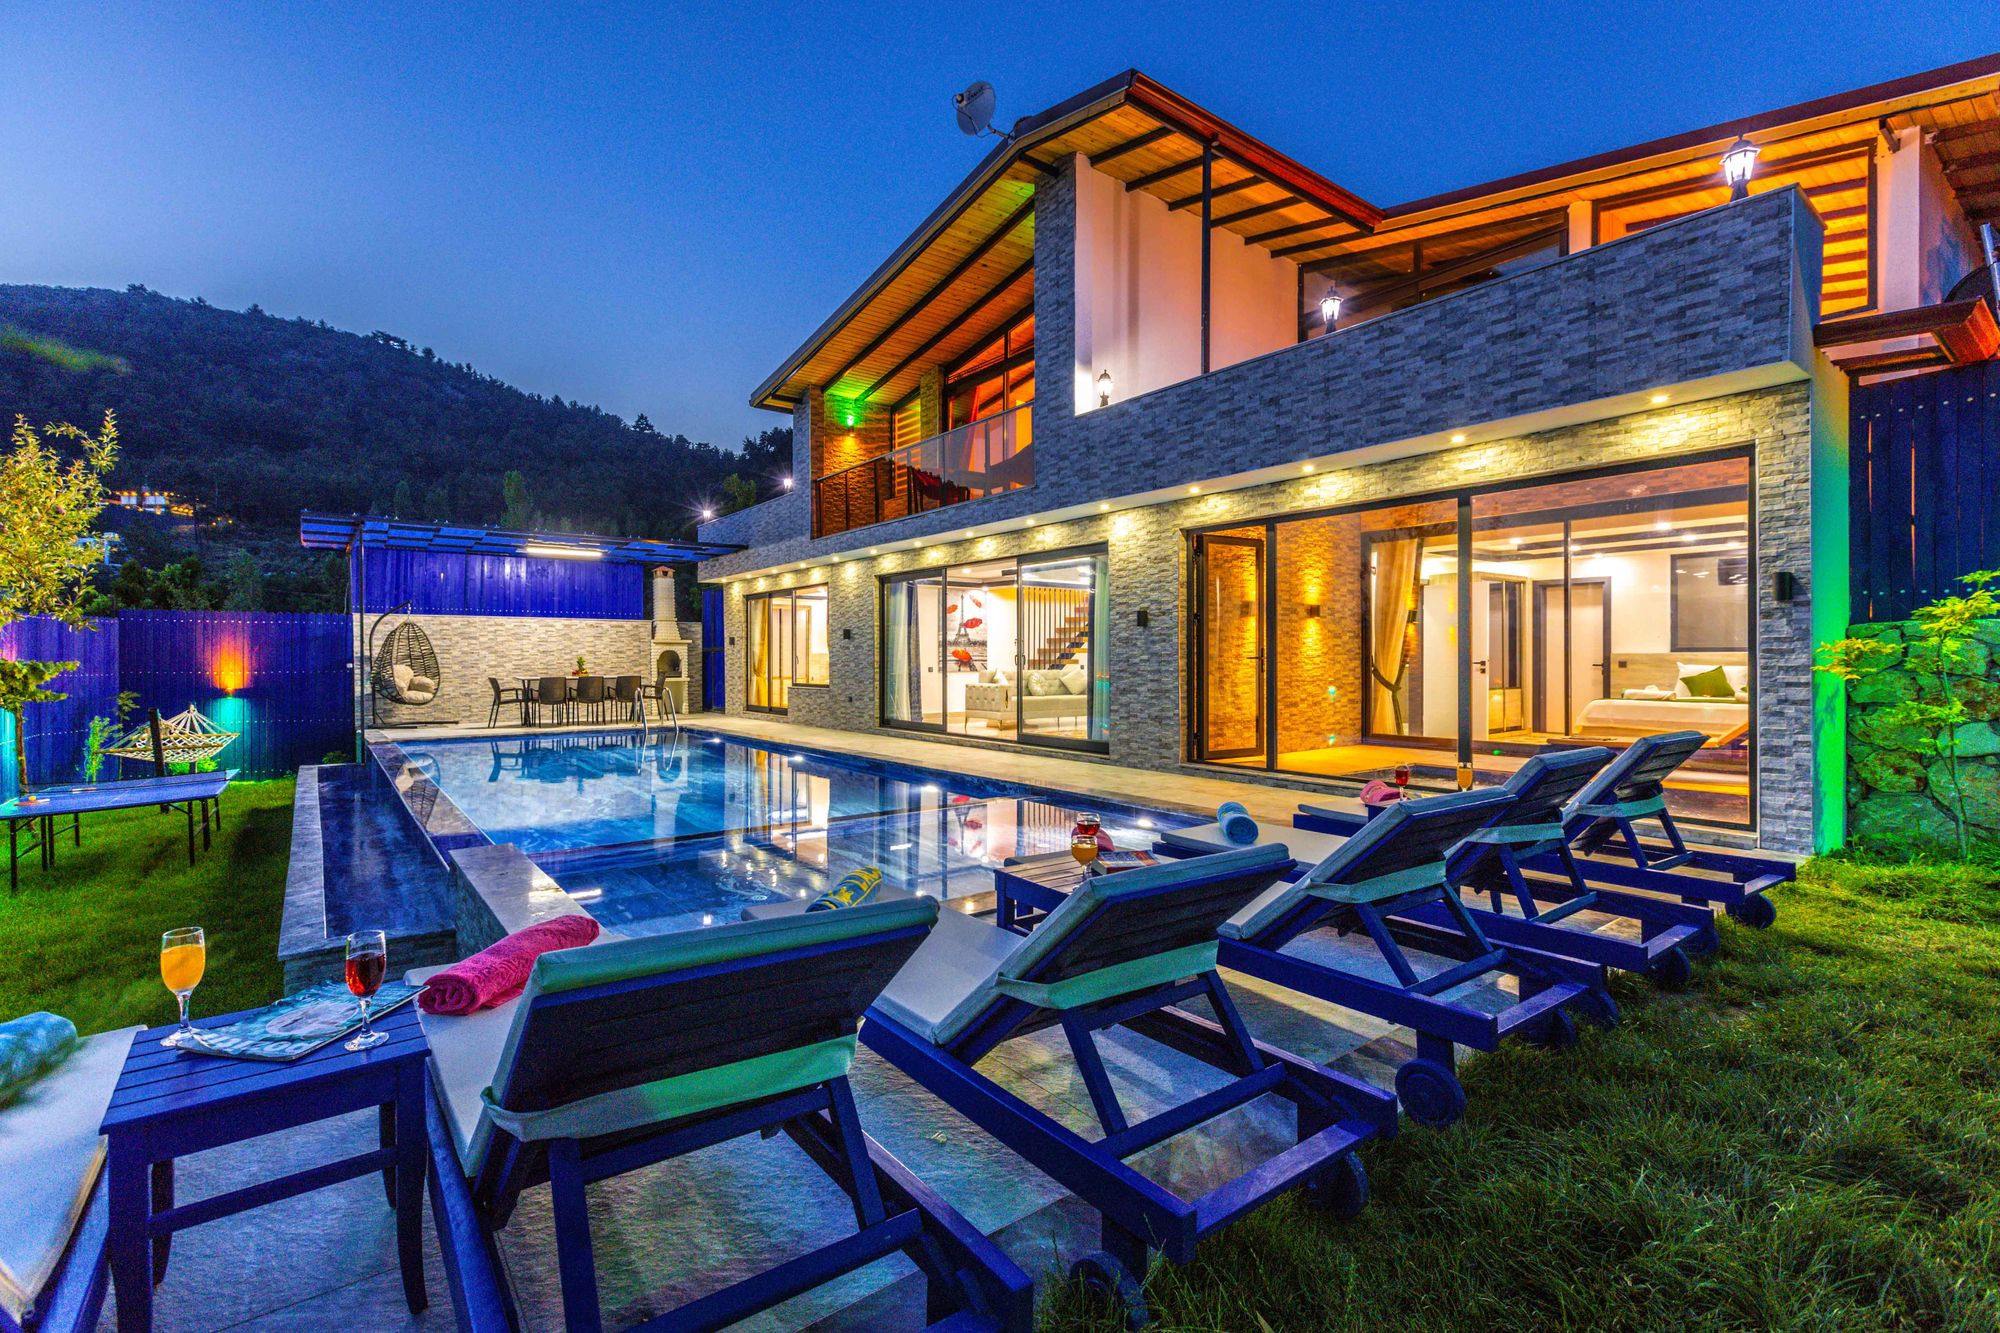 Vista noturna de uma casa contemporânea com piscina iluminada e mobiliário exterior flexível, evidenciando um estilo de vida luxuoso e sofisticado. 